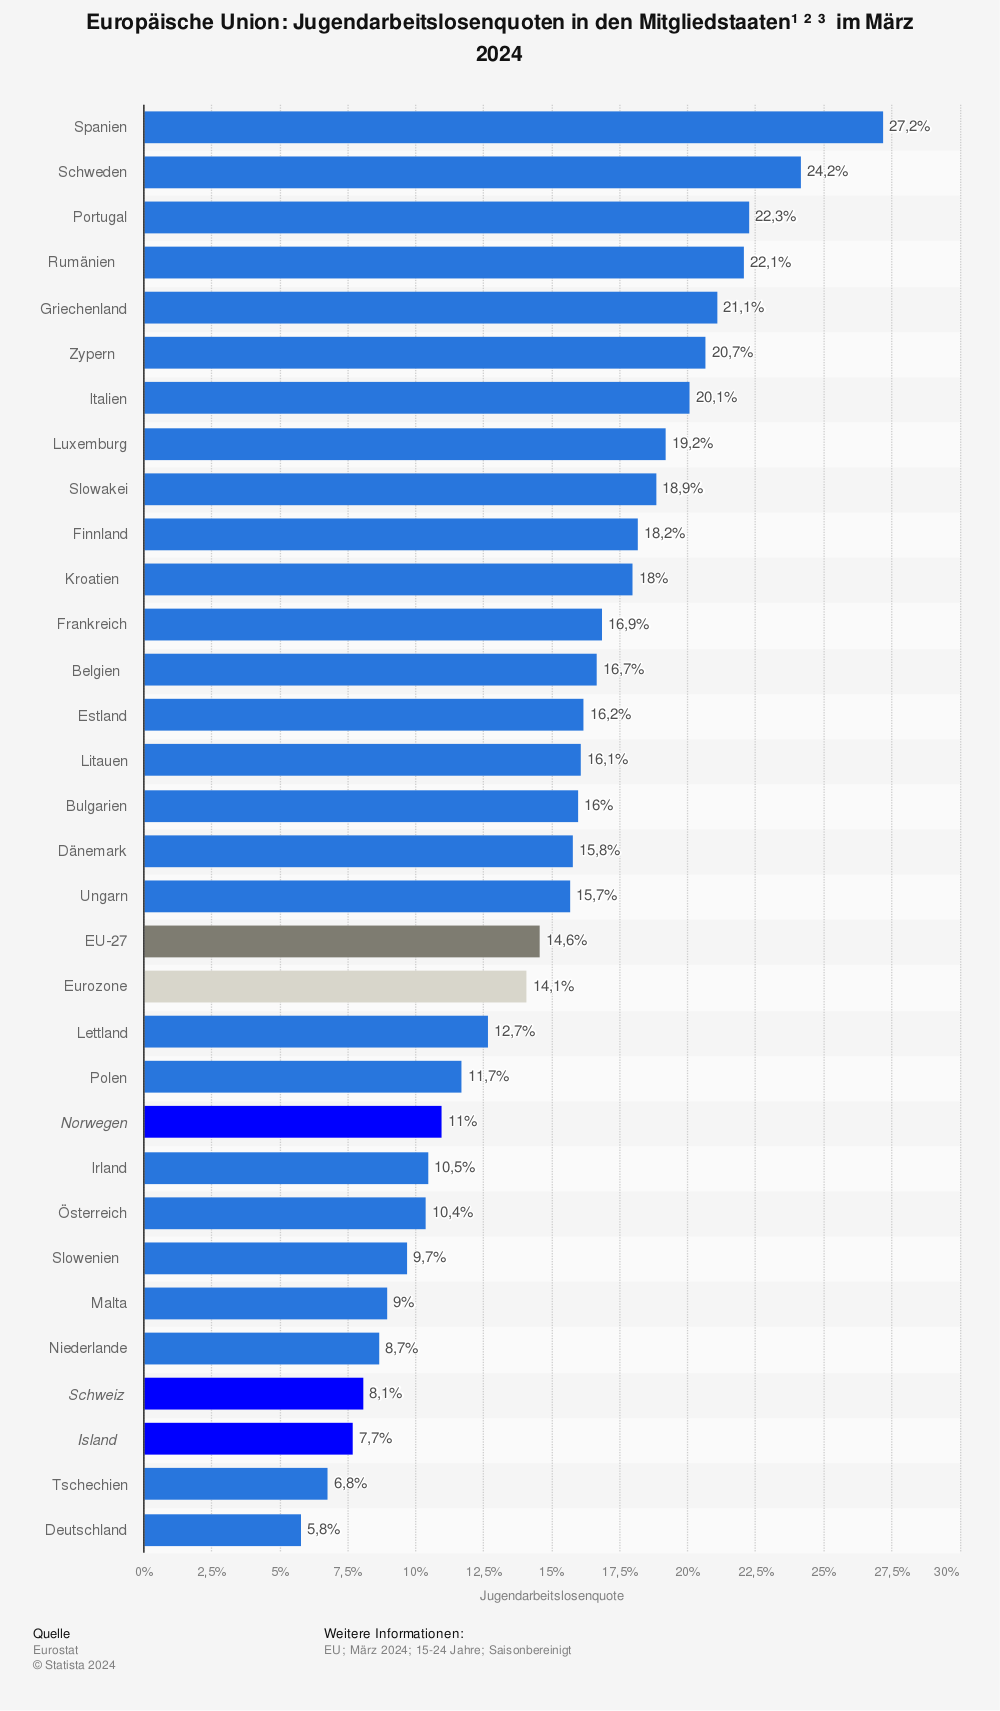 Jugendarbeitslosenquote in den EU-Ländern Juli 2013